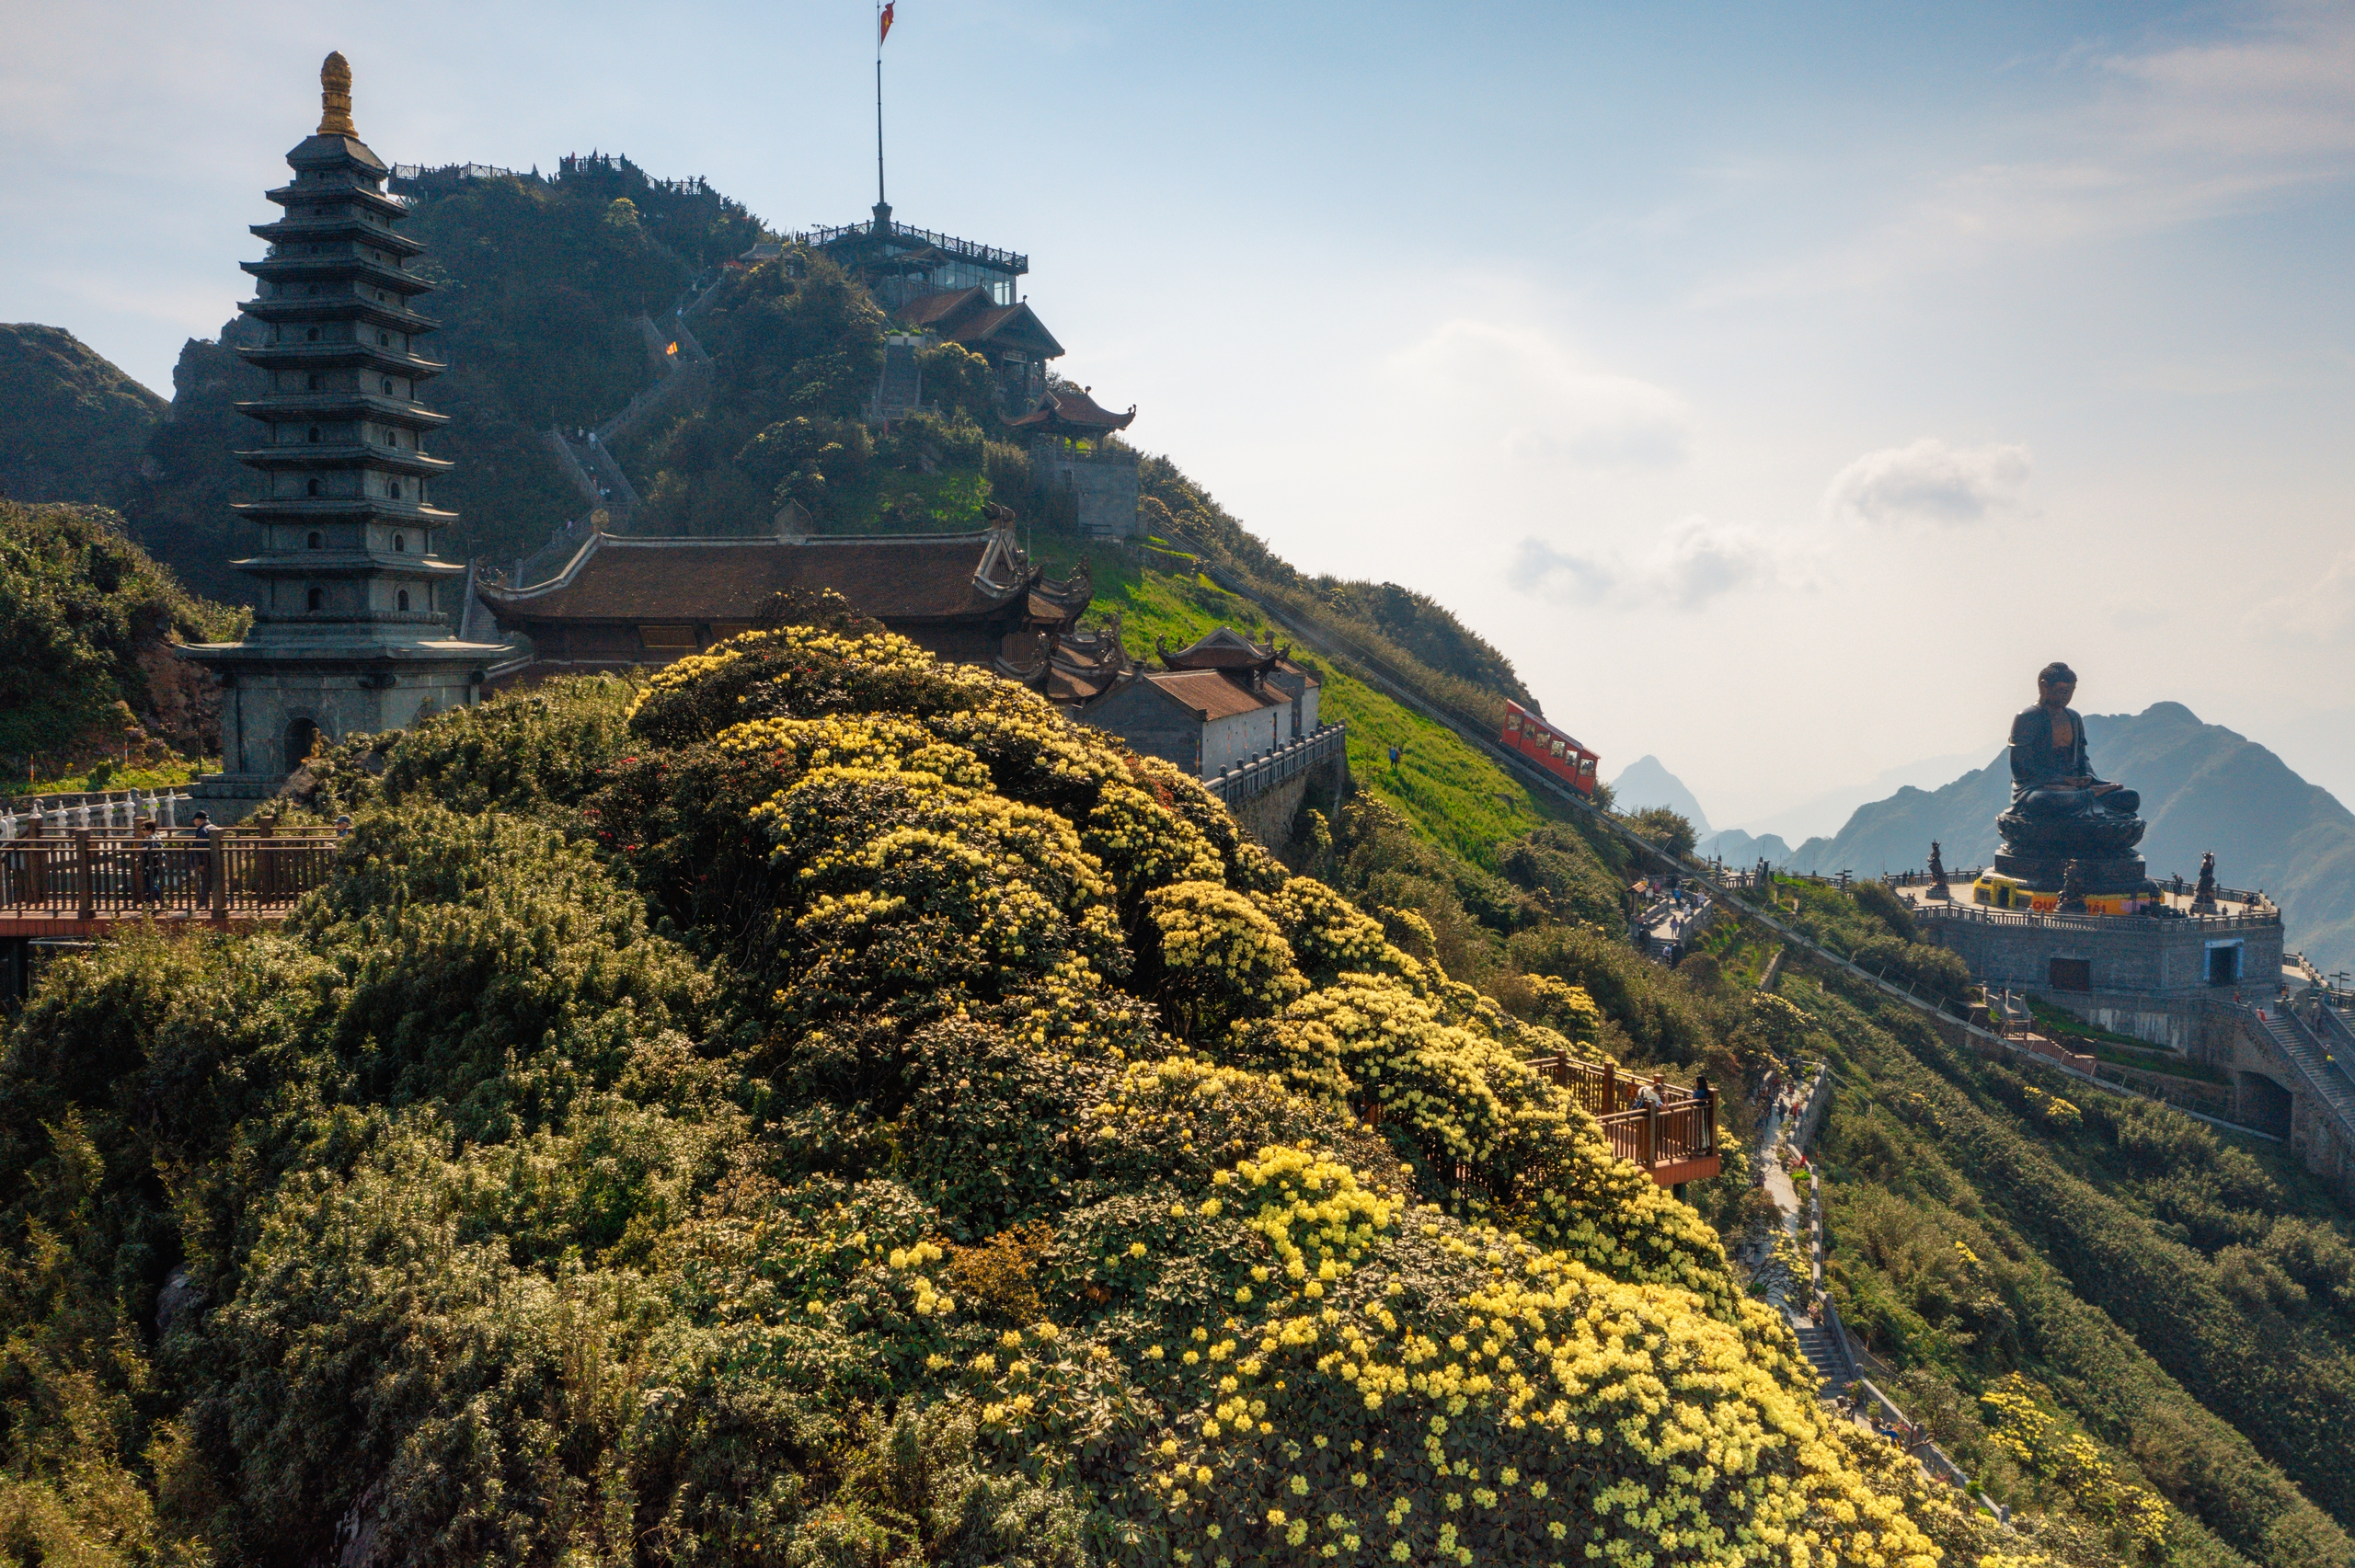 Từ trên cáp treo, du khách có thể chiêm ngưỡng những thảm hoa vàng và đỏ rực rỡ, sáng bừng cả không gian rộng lớn giữa độ cao từ 2.000m tới đỉnh Fansipan